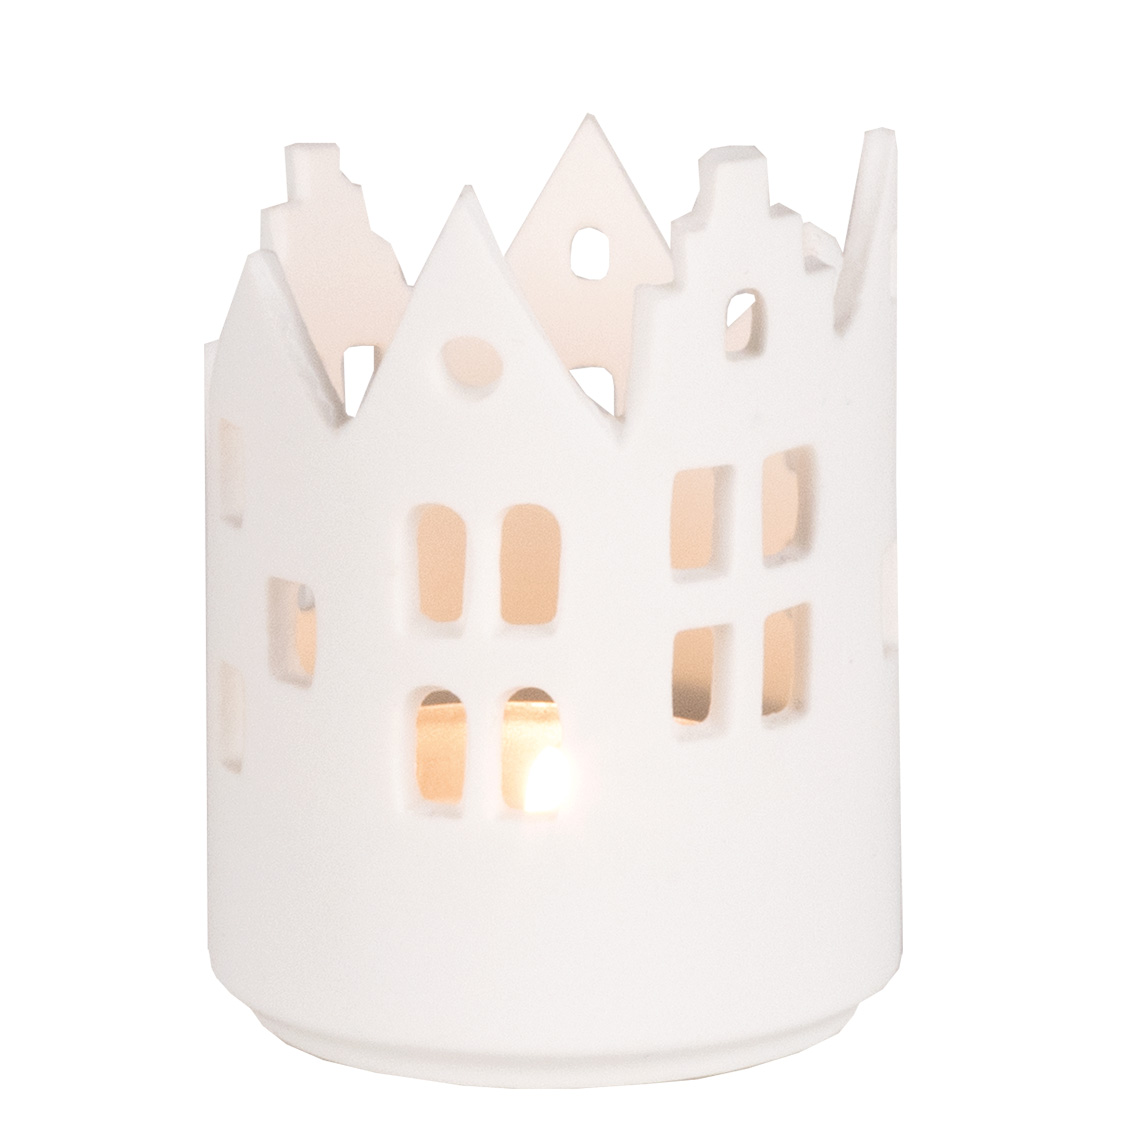 Svietnik RÄDER vo forme domového nádvoria z matného bieleho porcelánu v tvare valca vysoký 7,5 cm s priemerom 5,5 cm.